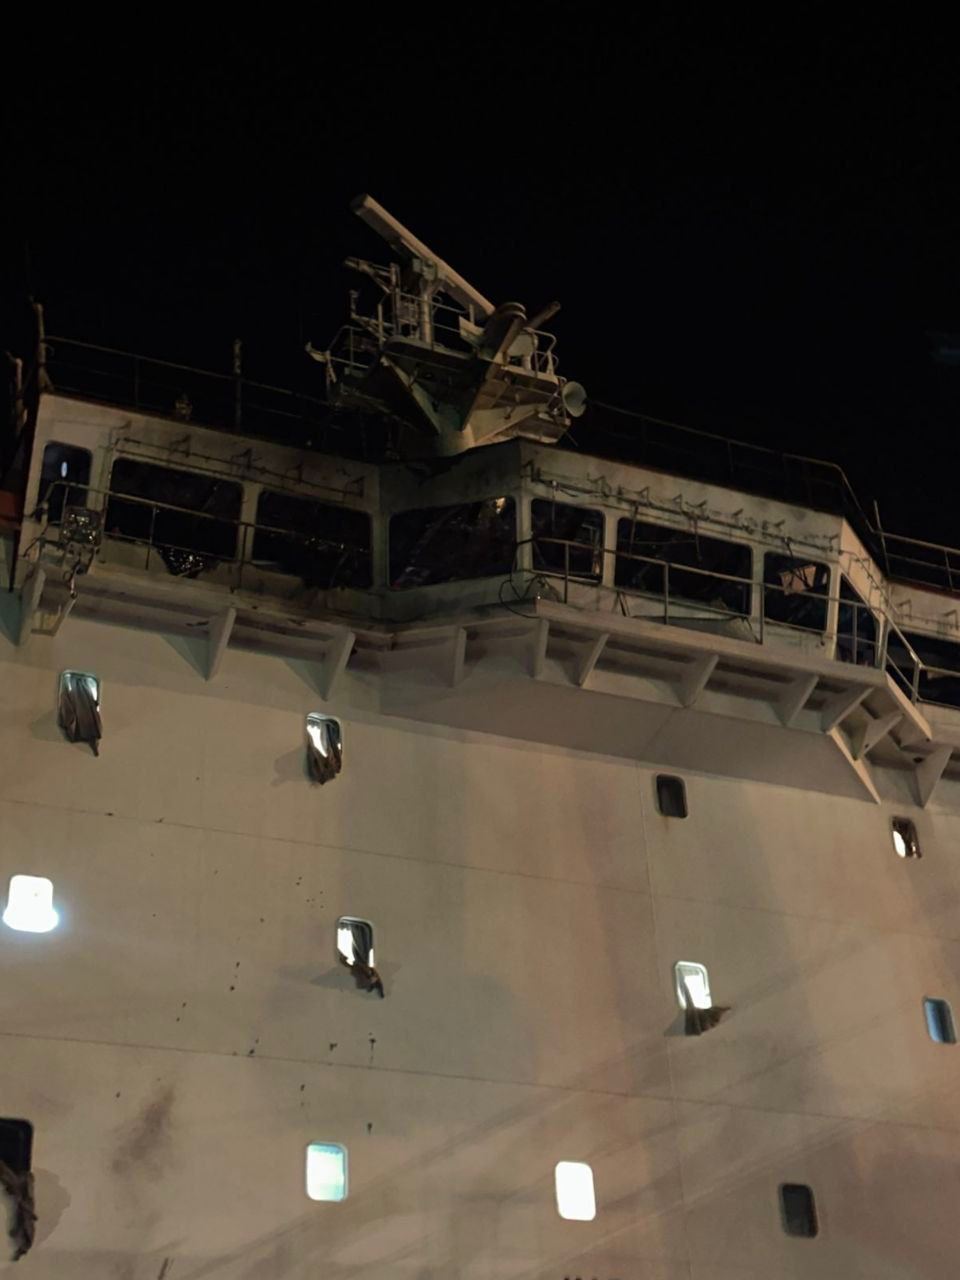 россия обстреляла гражданское судно под флагом Либерии